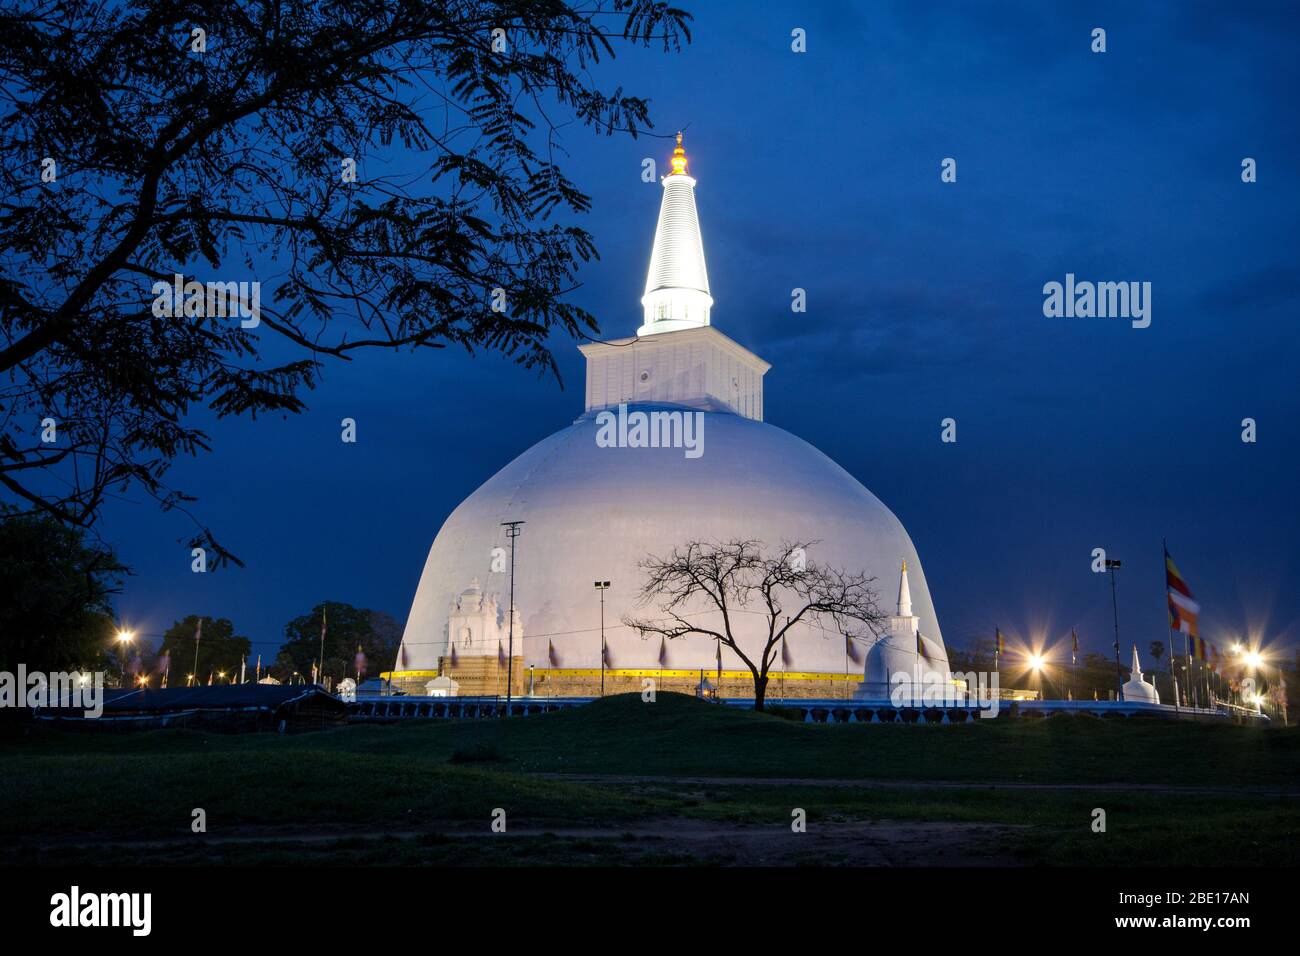 Die Ruwanwelisaya ist eine Stupa, eine halbkugelförmige Struktur mit Reliquien, in Sri Lanka, als heilig für viele Buddhisten auf der ganzen Welt. Stockfoto